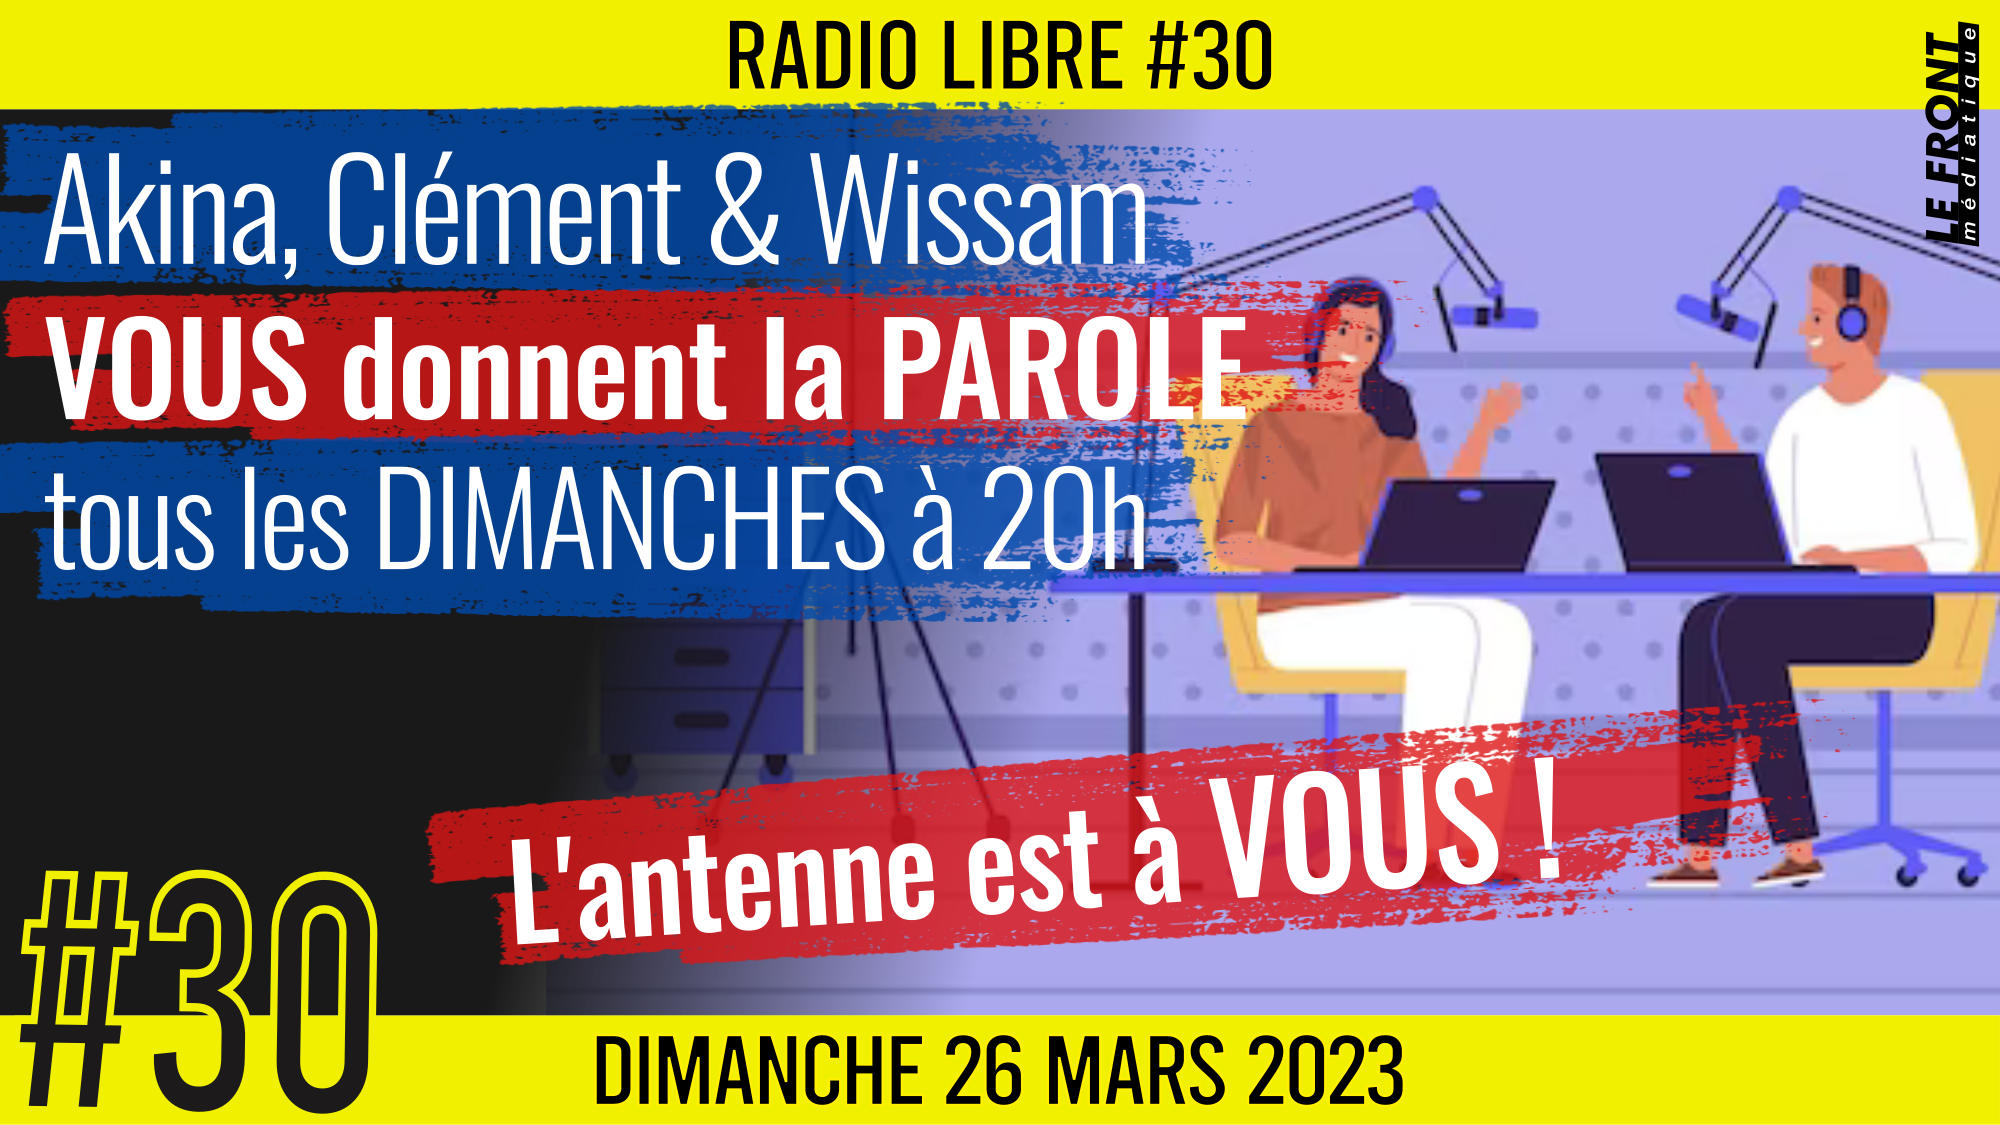 📟 RADIO LIBRE #30 🎙La Libre Antenne est à VOUS ! 🗣 Akina, Clém et Wissam 📆 26-03-2023